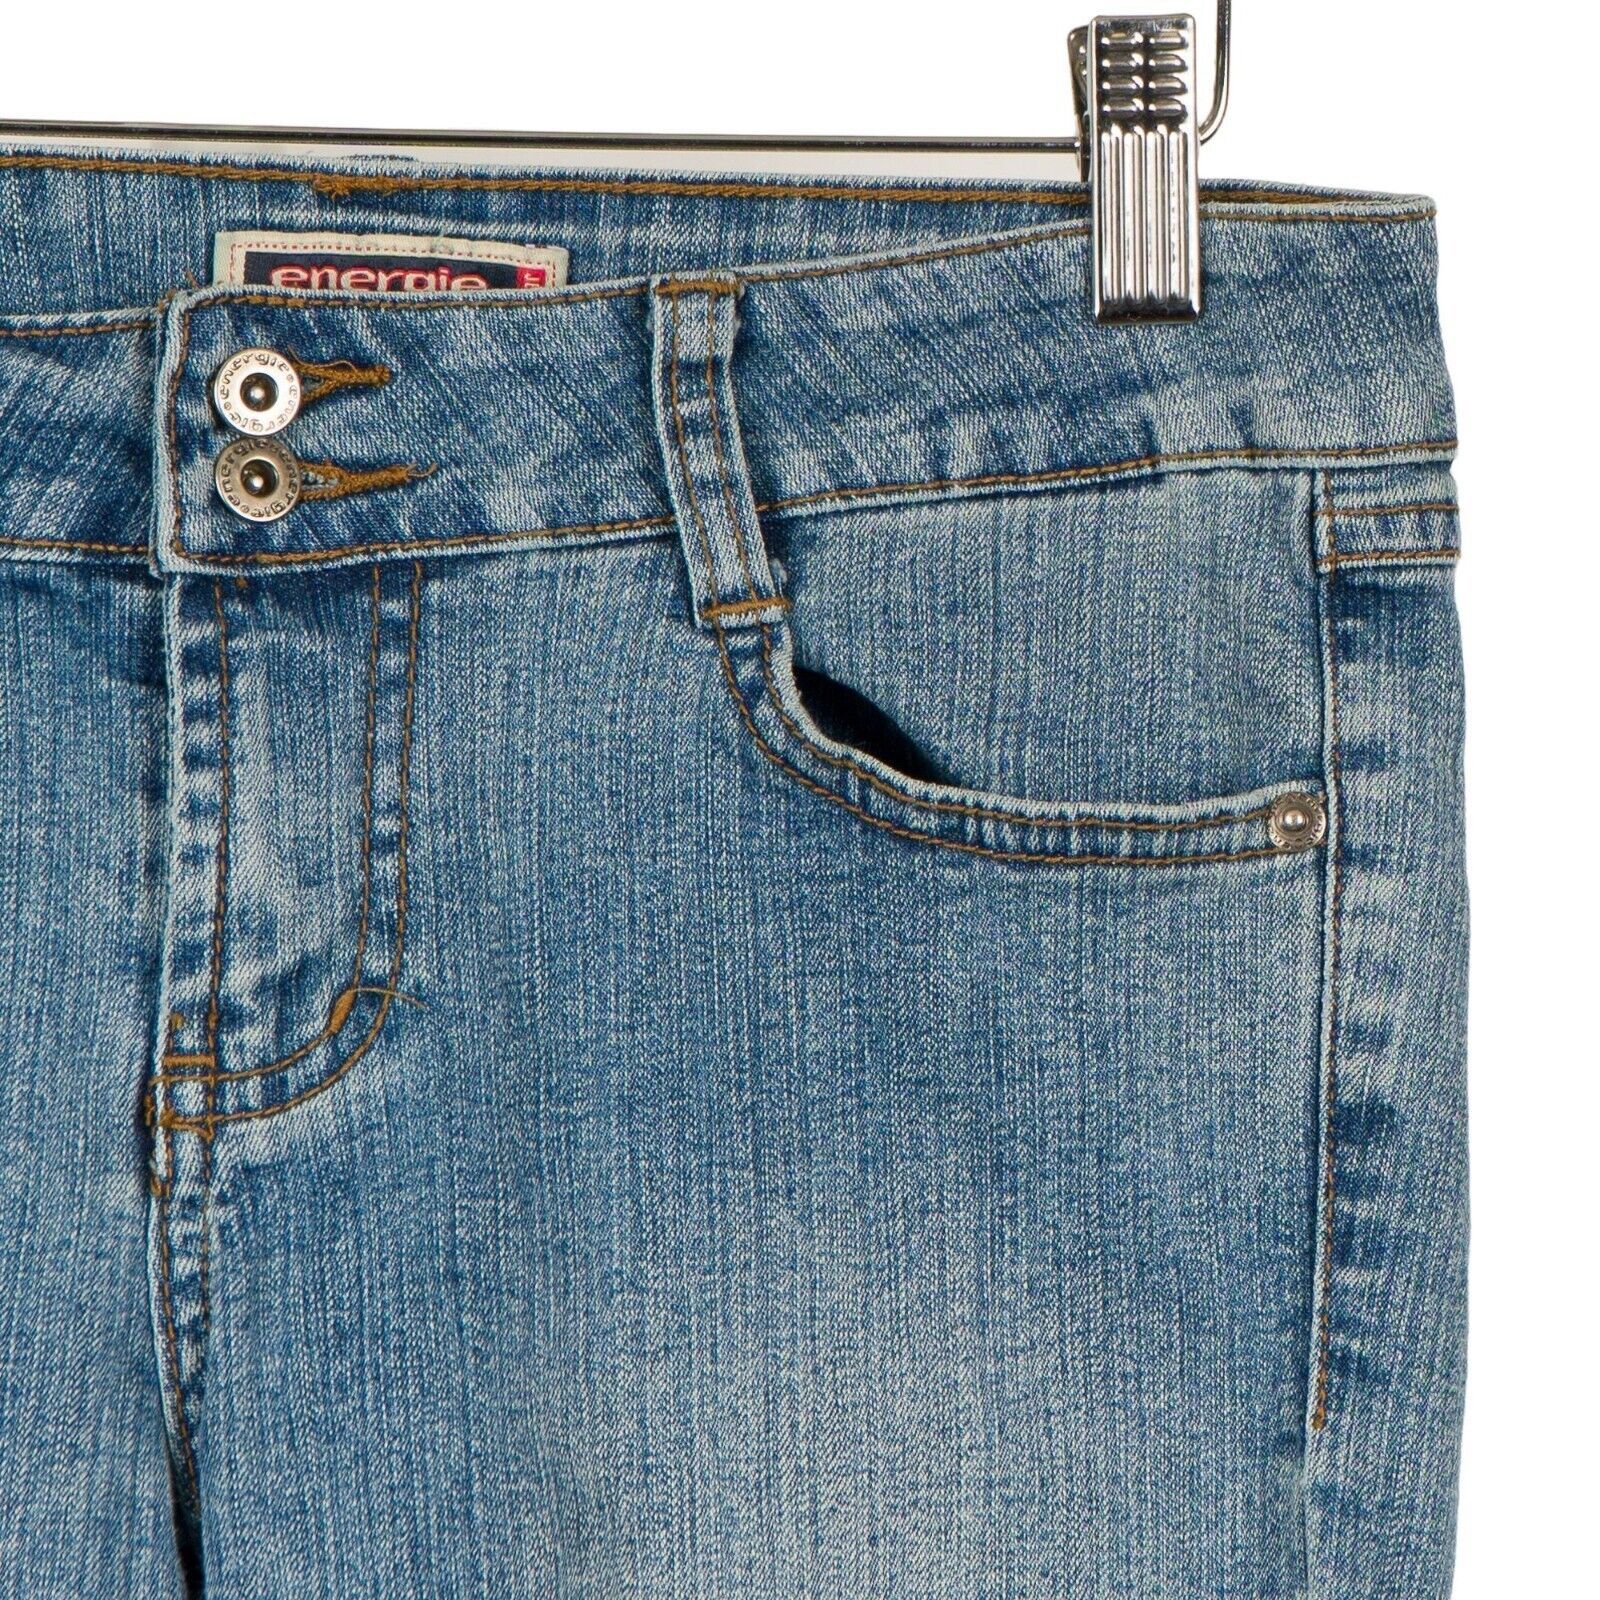 Energie Capri Pants 14 Girls Blue Jean VTG 90s Low Waist Pockets Cotton Blend - $12.73